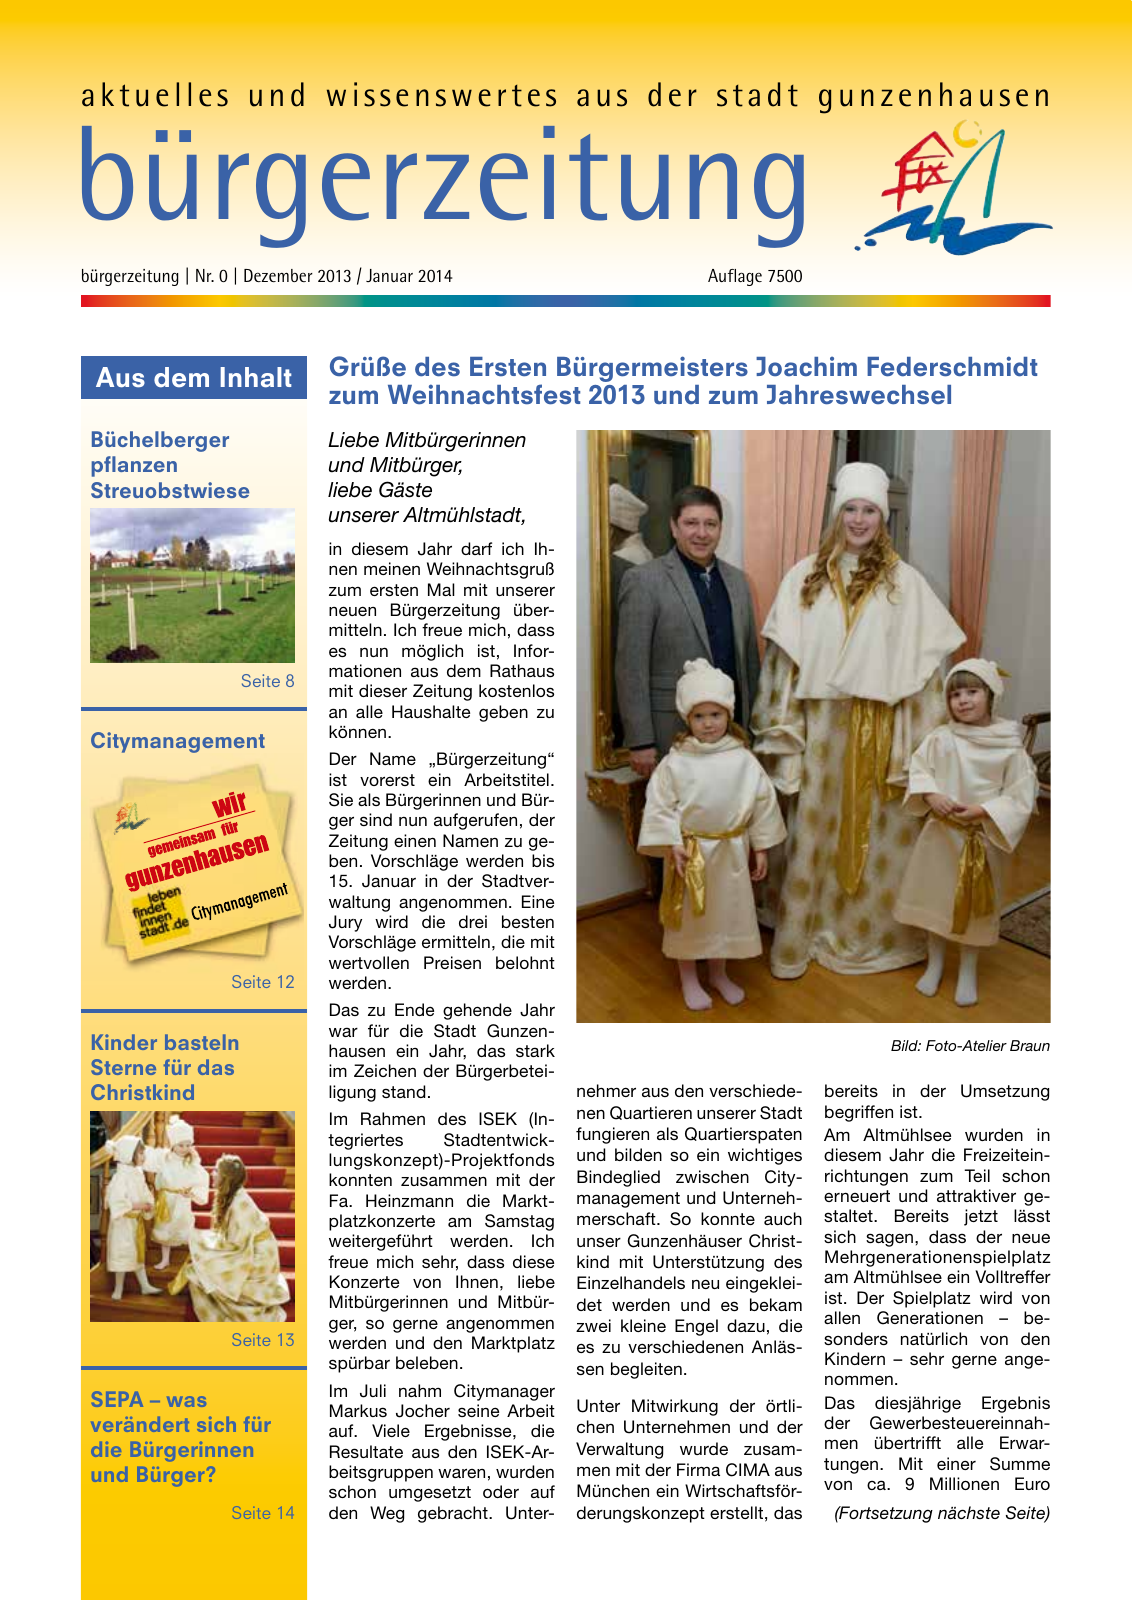 Vorschau bürgerzeitung Nr. 0 Dezember 2013 Januar 2014 Seite 1